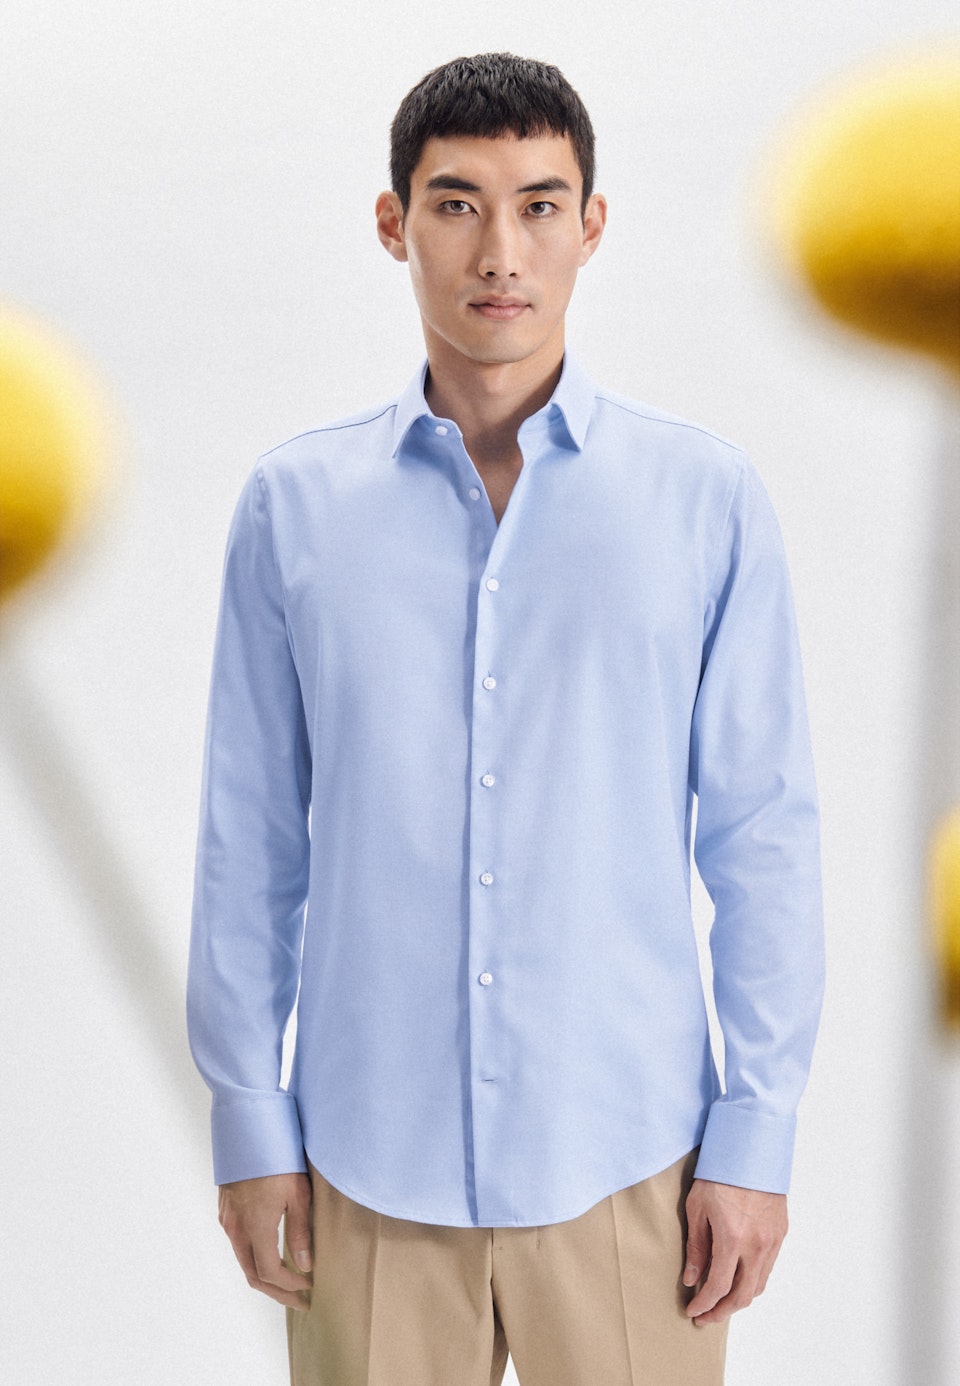 Bügelleichtes Twill Business Hemd in X-Slim mit Kentkragen in Hellblau |  Seidensticker Onlineshop